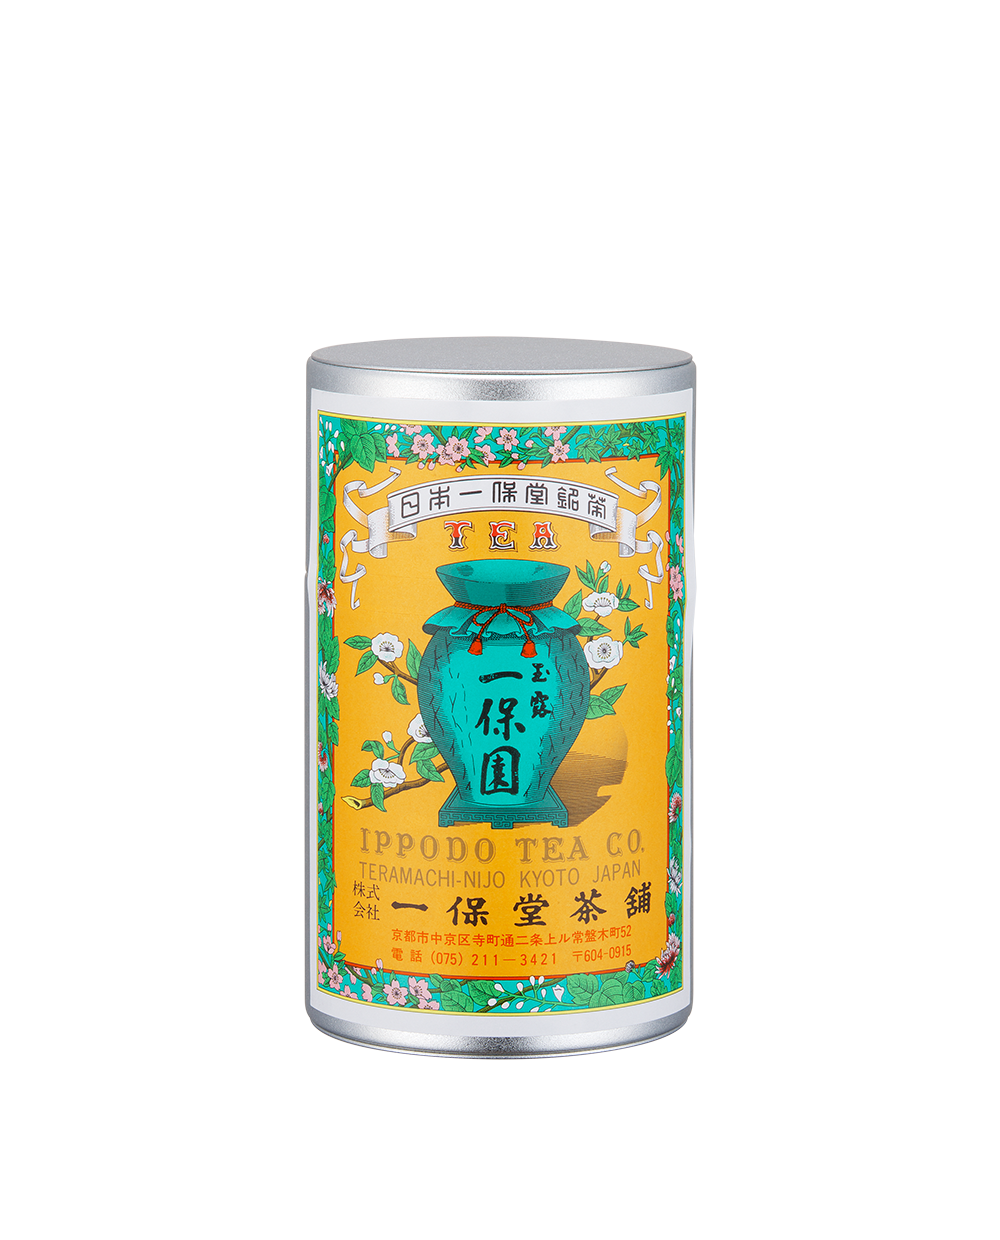 玉露 一保園(いっぽうえん)中缶箱(180g) – 一保堂茶舗